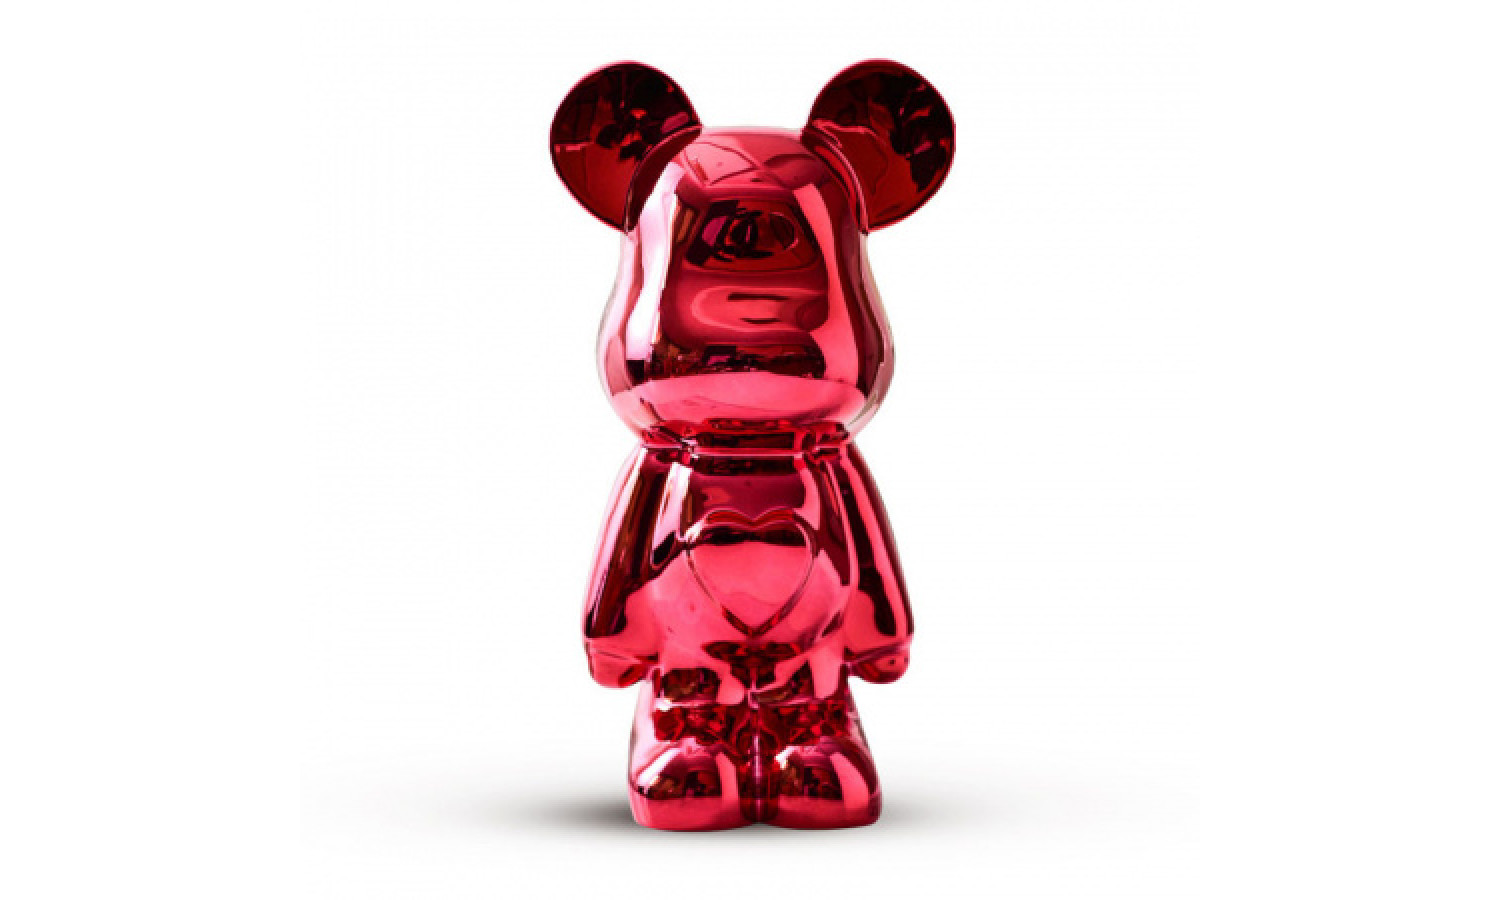 Статуэтка Lucky Bear (Bearbrick) IST-020, 28 см, красный глянцевый